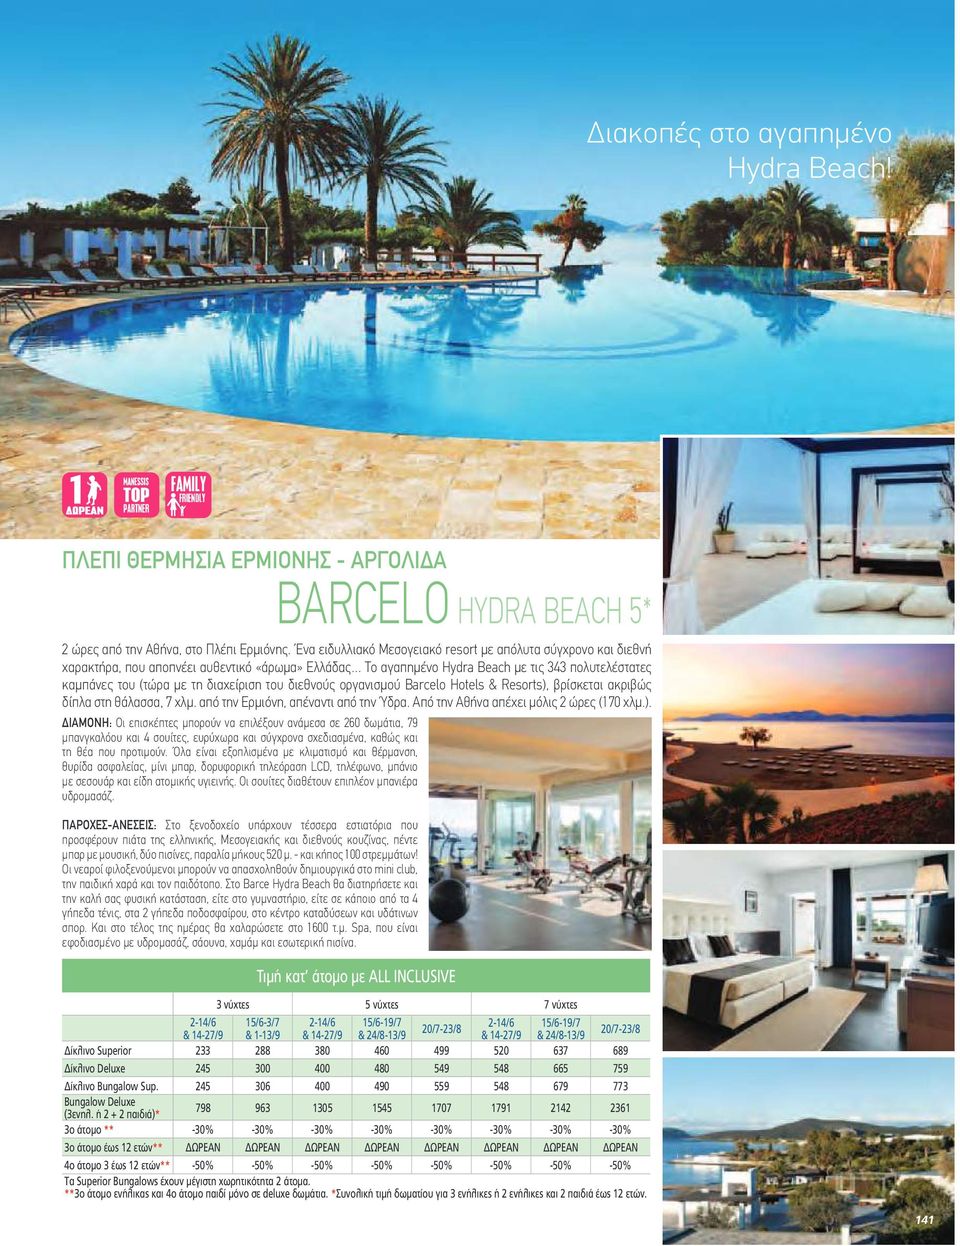 διαχείριση του διεθνούς οργανισµού Barcelo Hotels & Resorts),